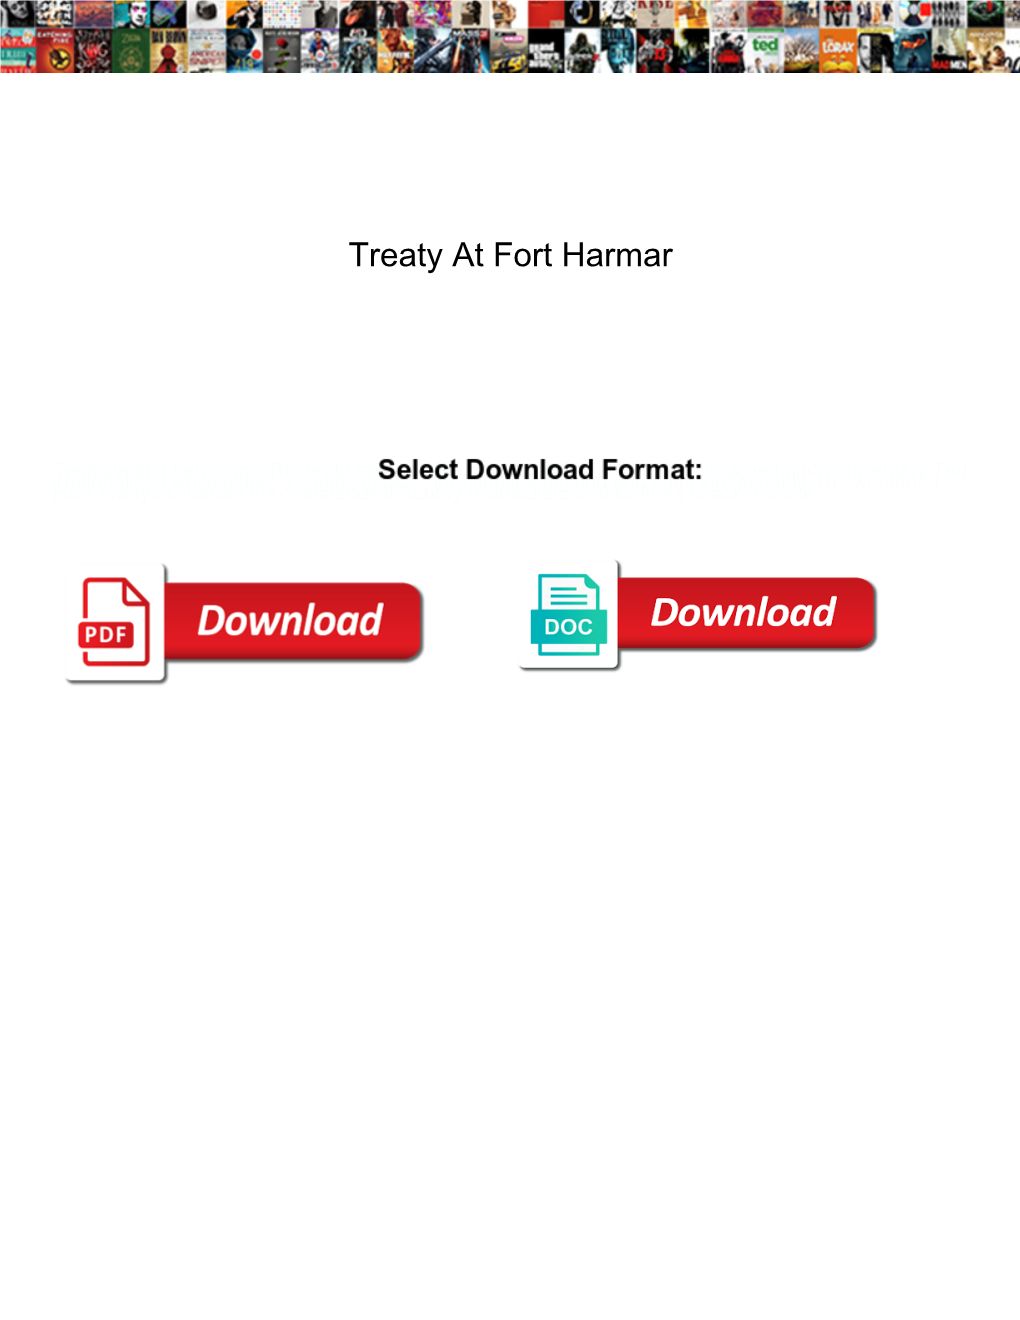 Treaty at Fort Harmar